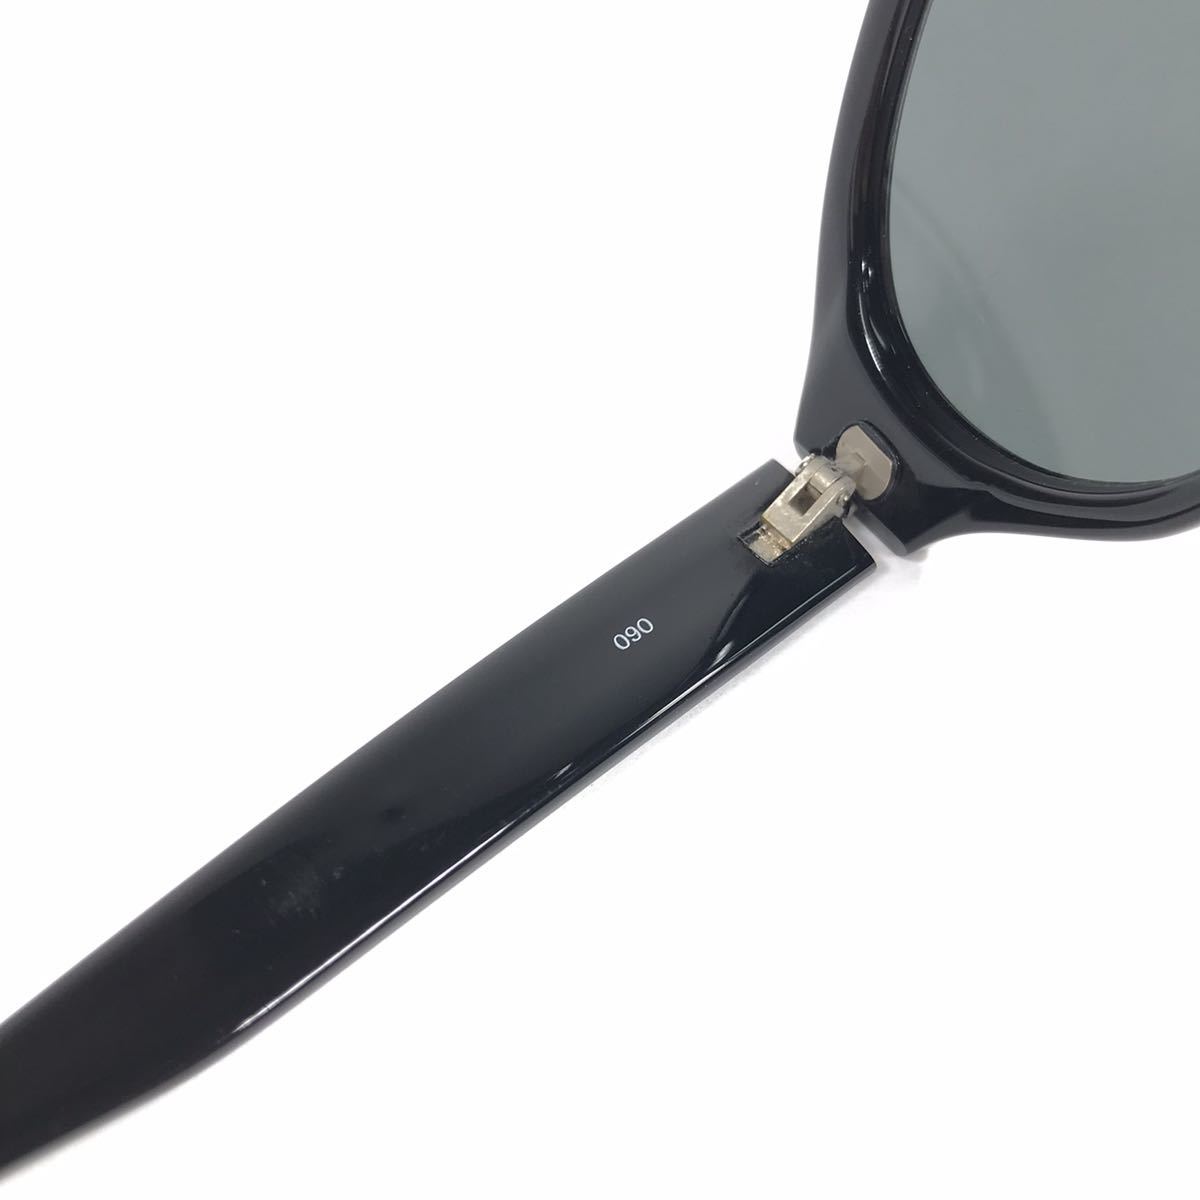 [ Calvin Klein ] подлинный товар CalvinKlein солнцезащитные очки Logo Temple 3144 хаки серый цвет серия × чёрный цвет серия мужской женский с футляром стоимость доставки 520 иен 